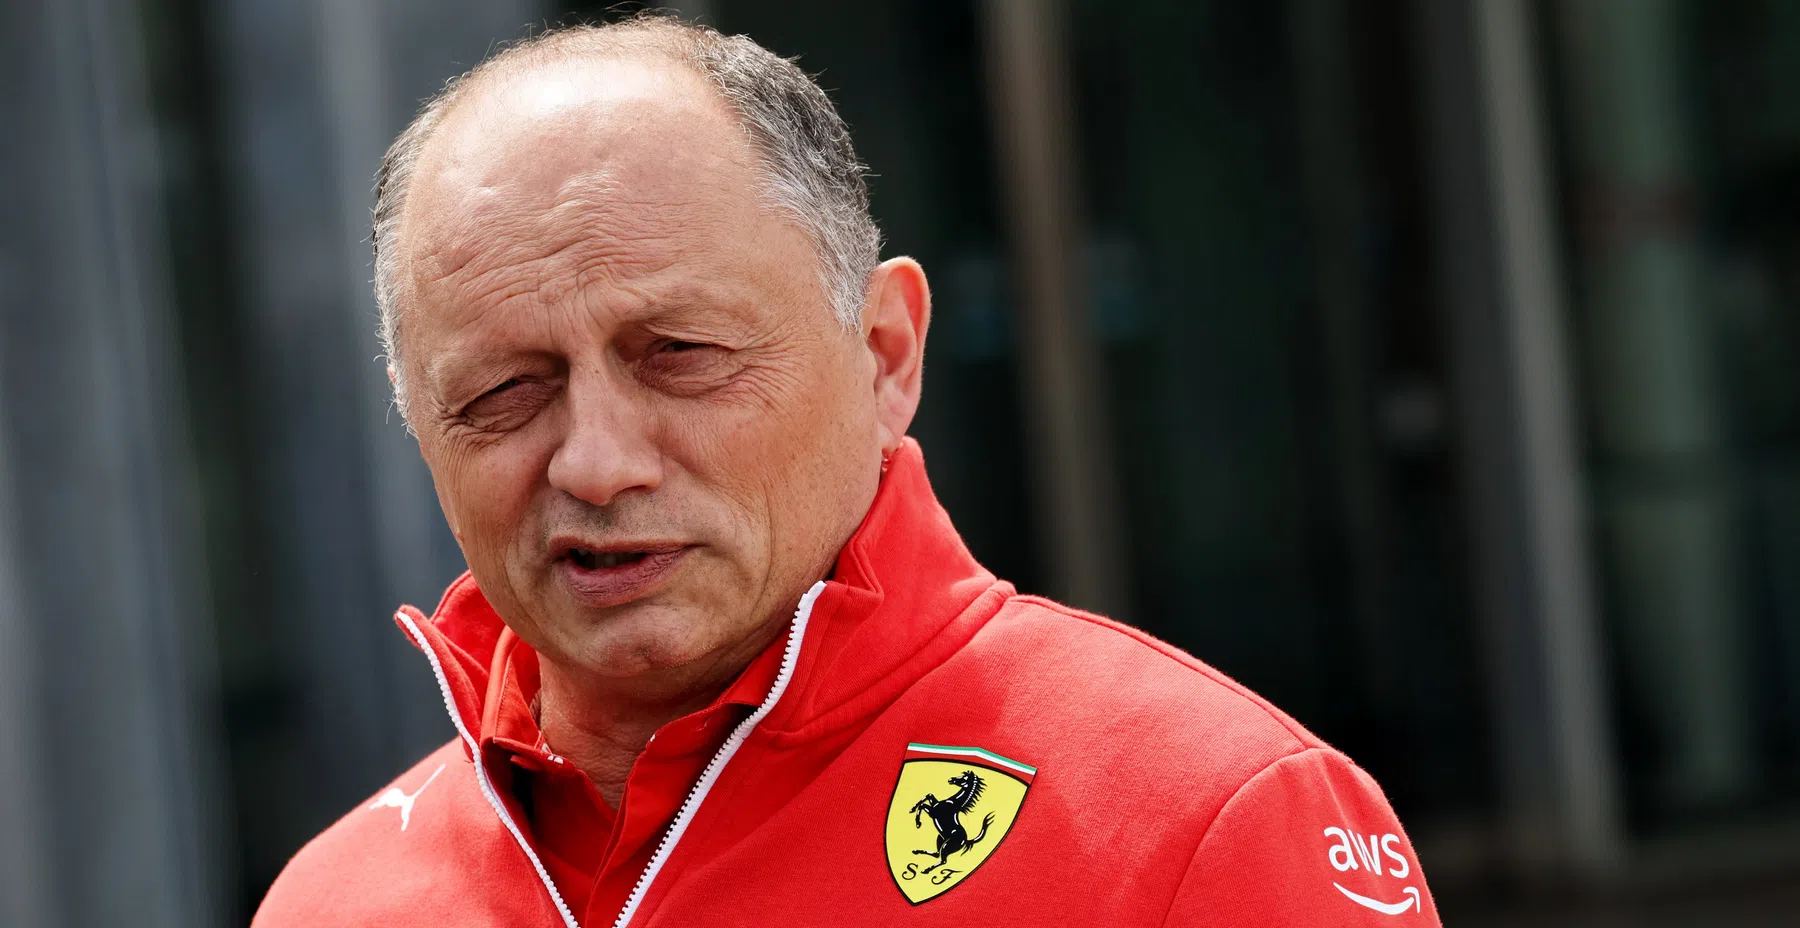 Il capo squadra della Ferrari Vasseur parla dell'impatto di Newey